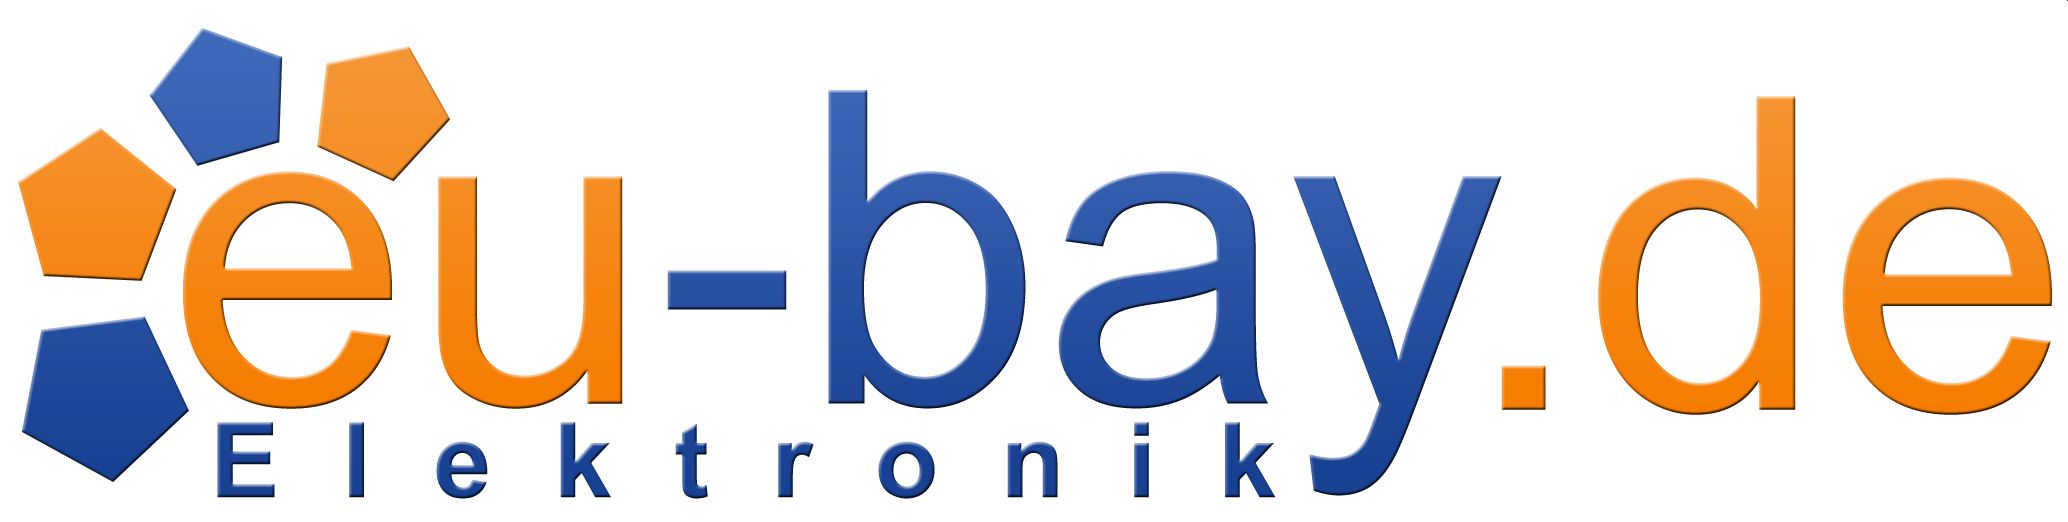 eu-bay_elektronik_logo